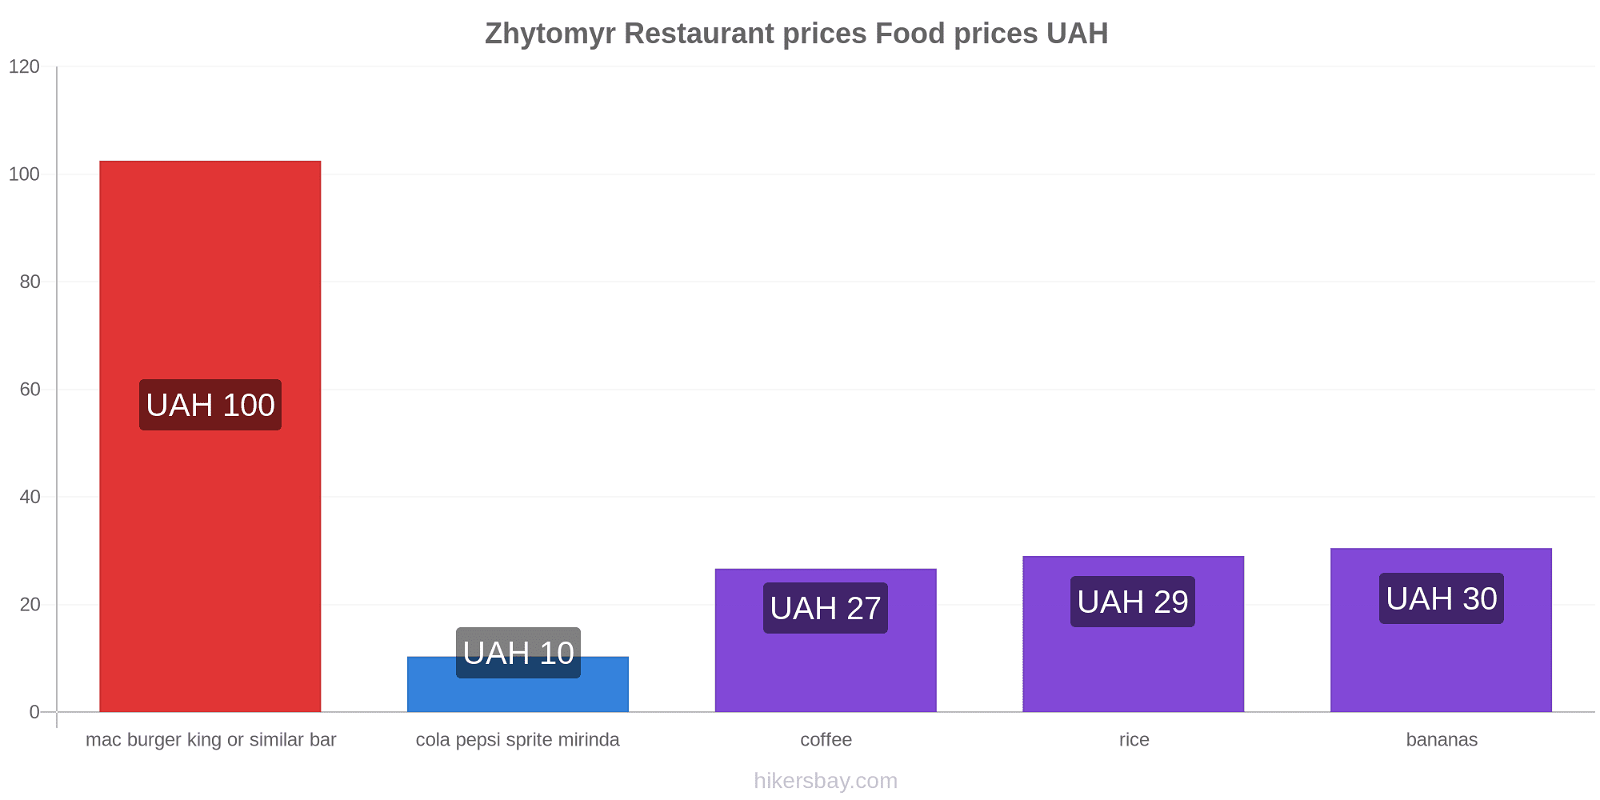 Zhytomyr price changes hikersbay.com